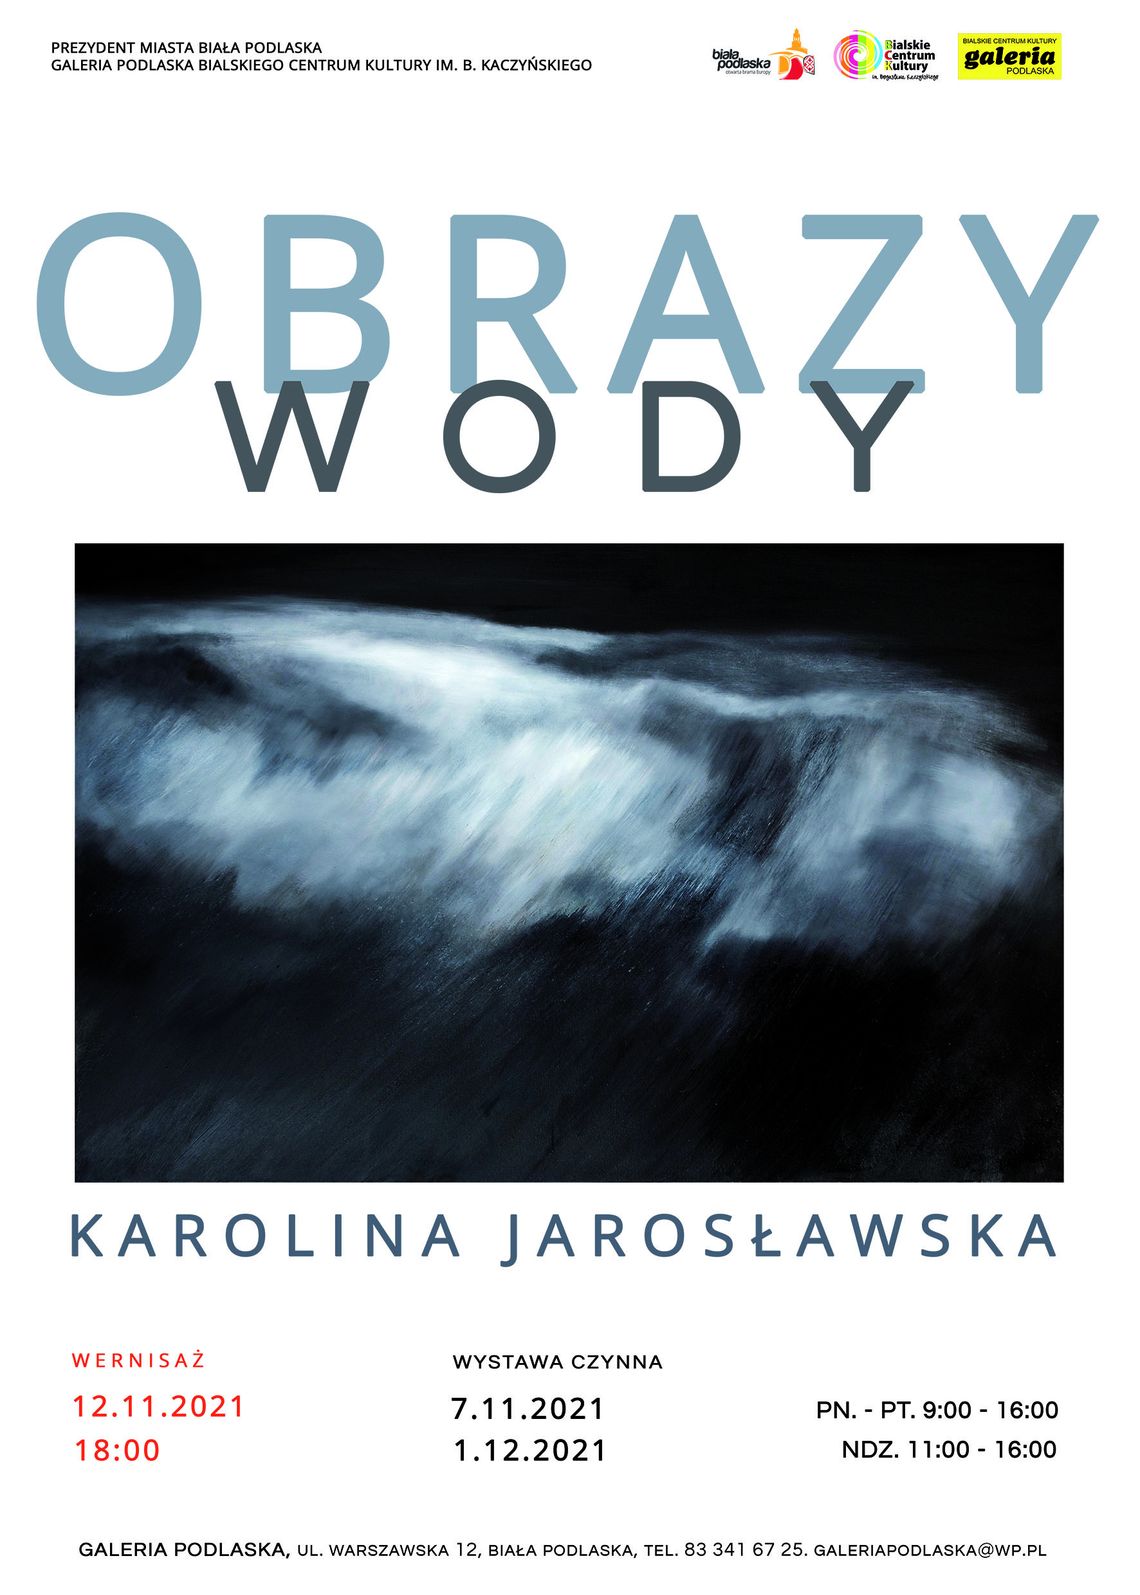 Wystawa "Obrazy wody" Karoliny Jarosławskiej